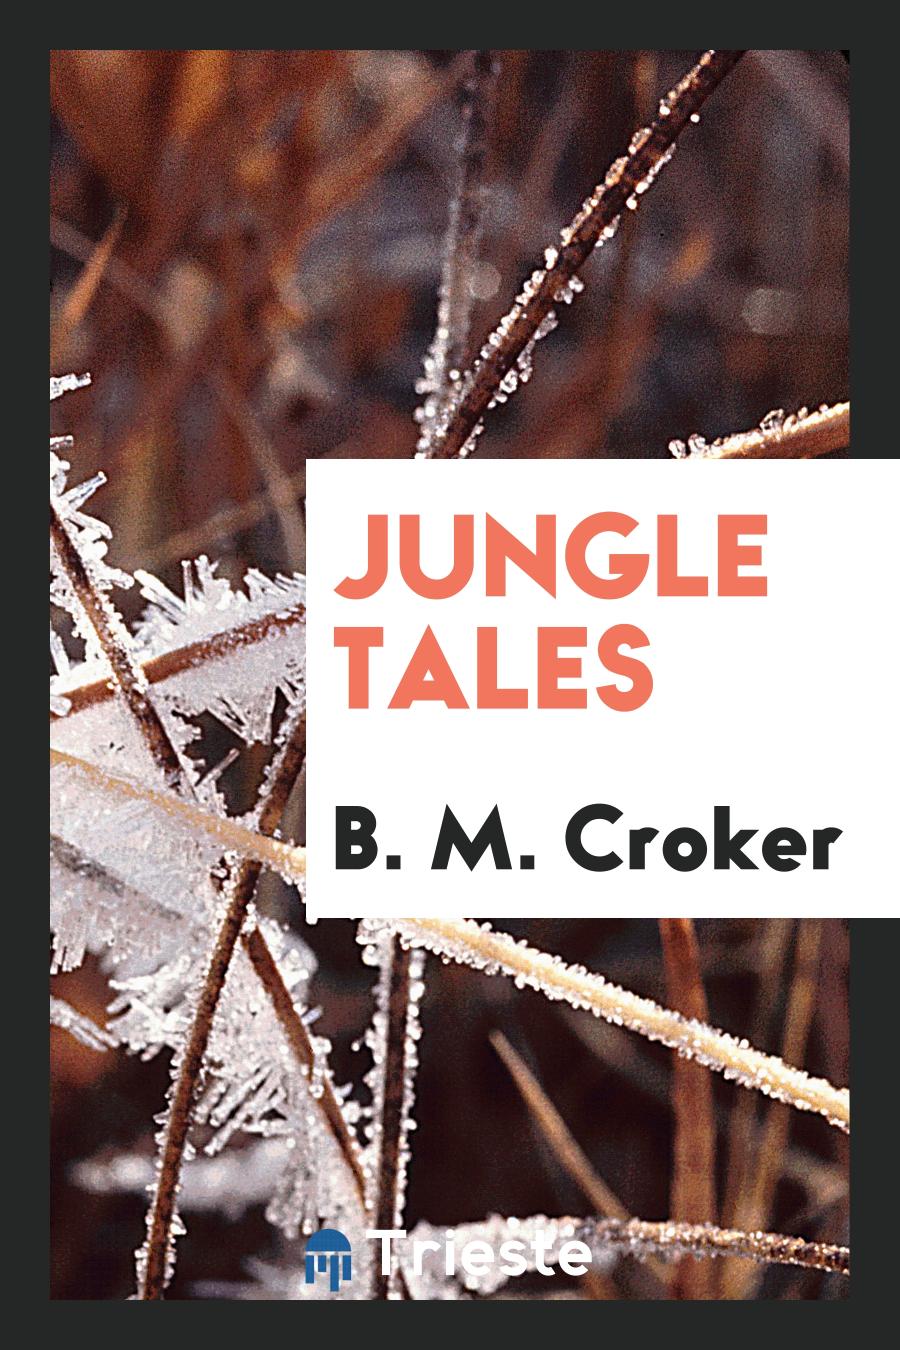 Jungle tales